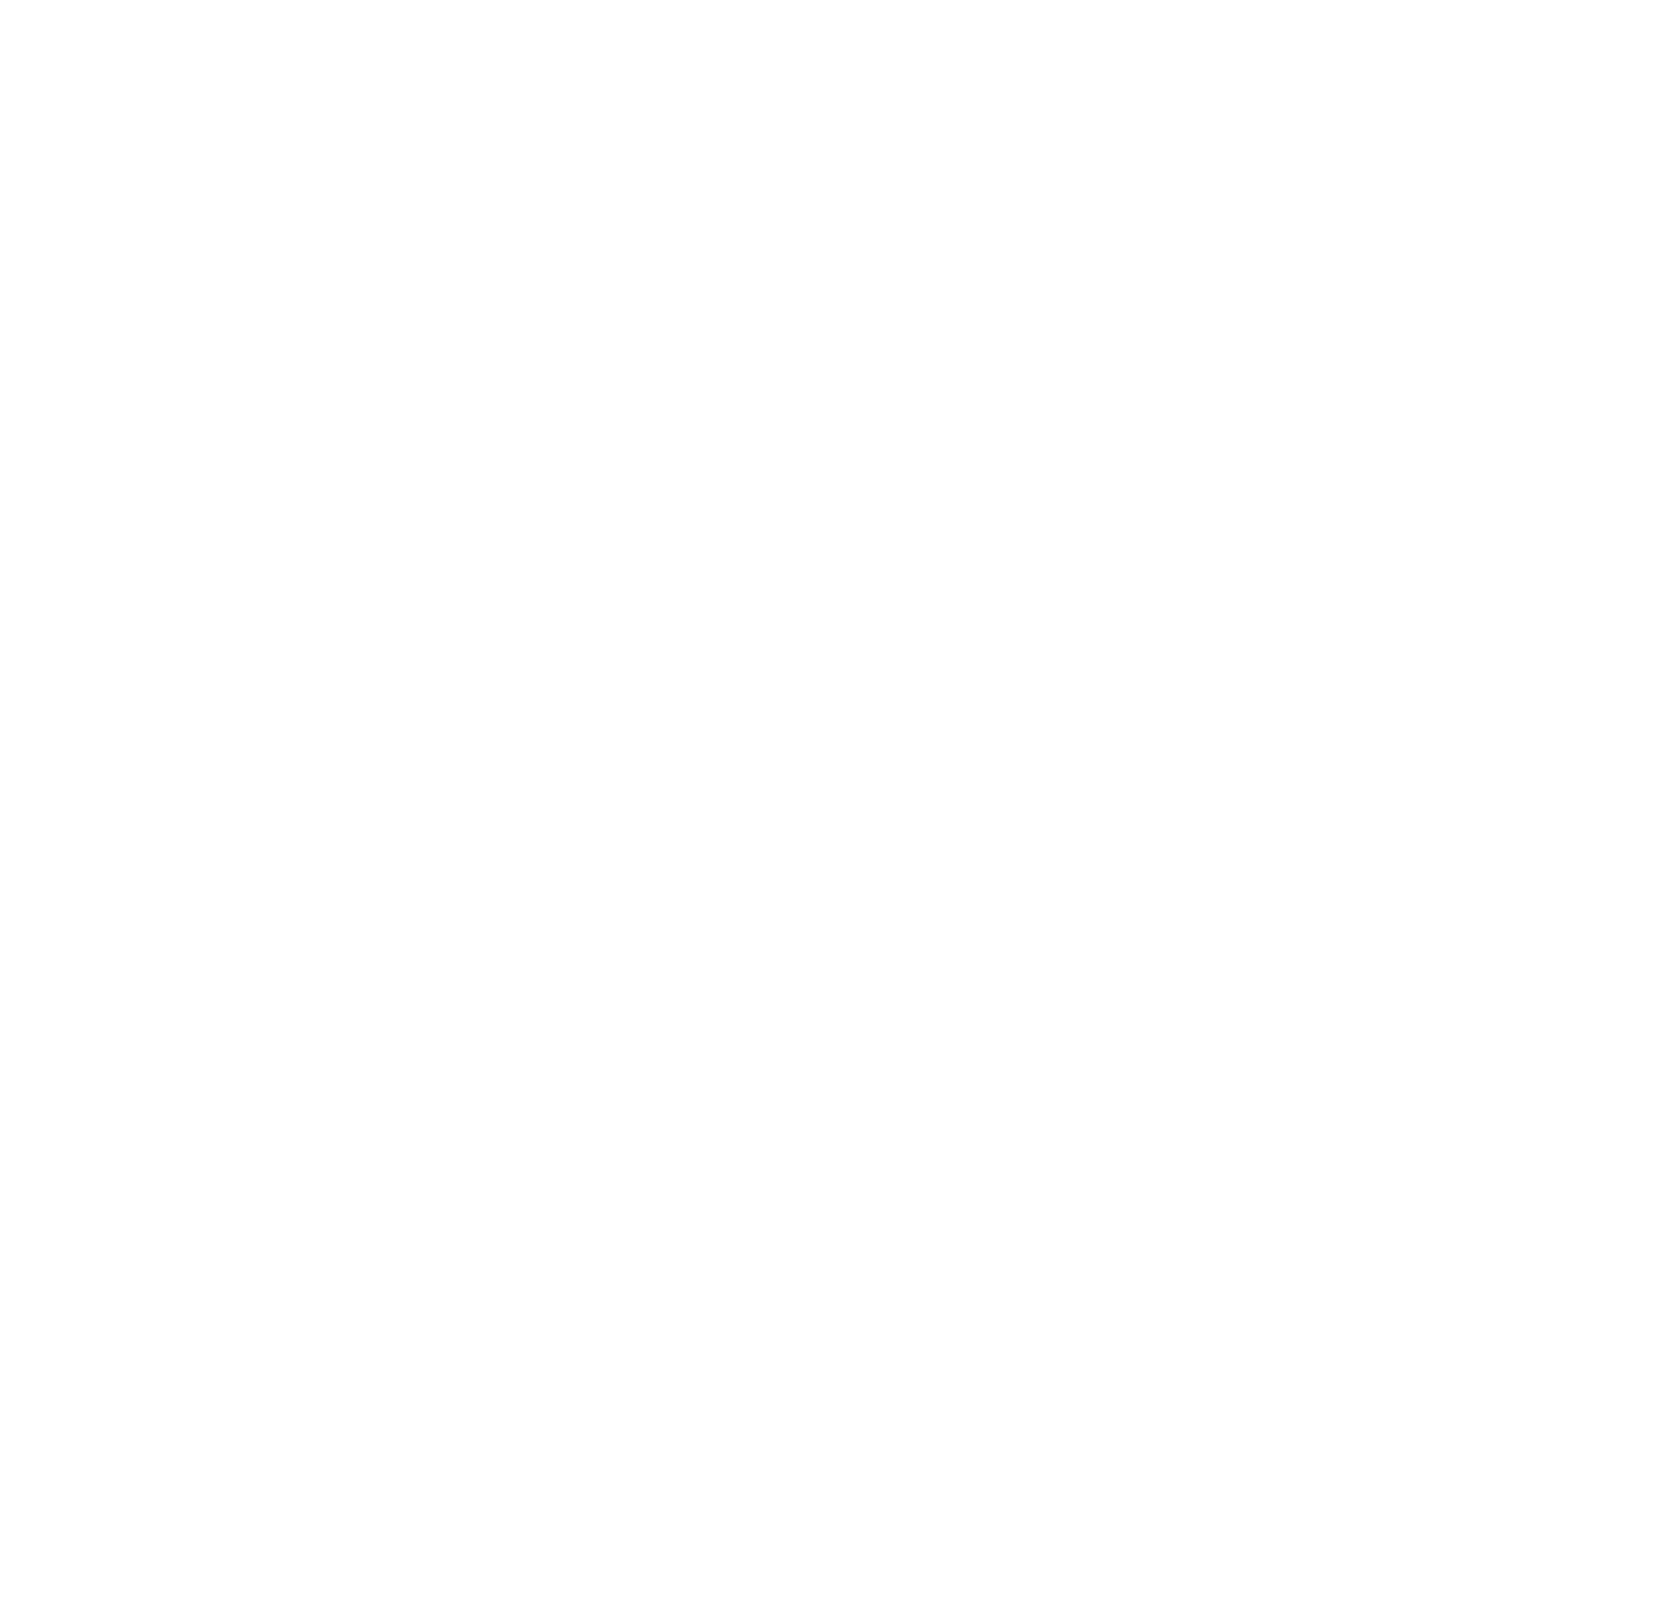 Gruppo Scout San Nicolò di Celle 1